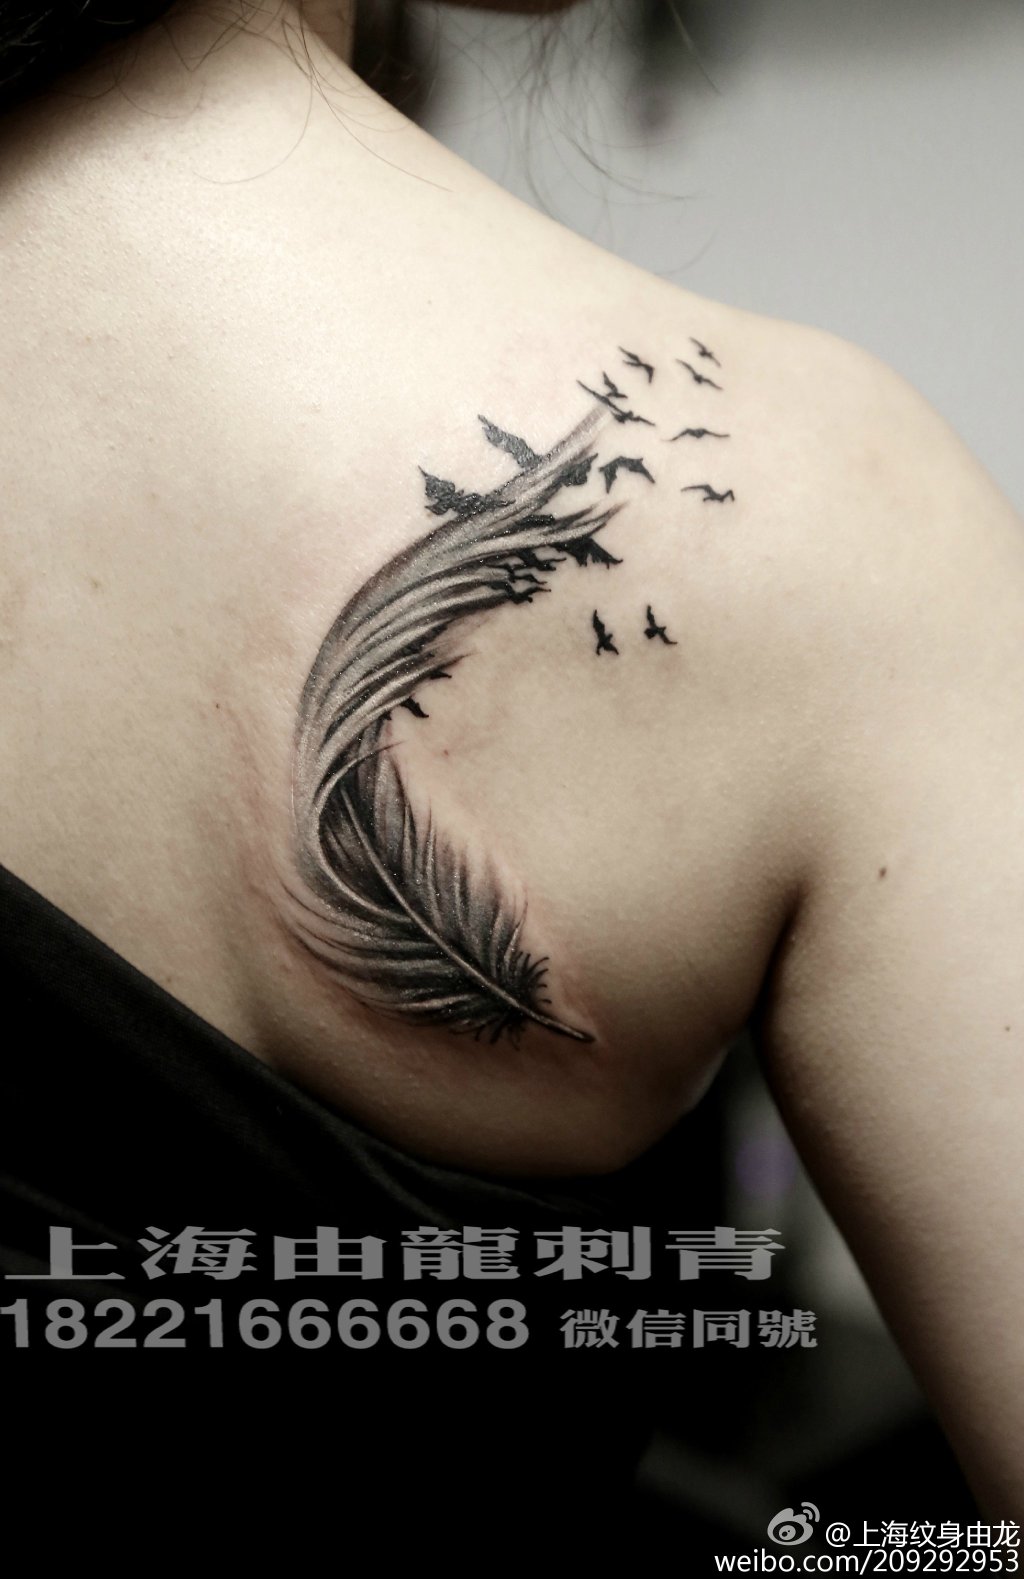 男生后背翅膀纹身图案内容图片分享